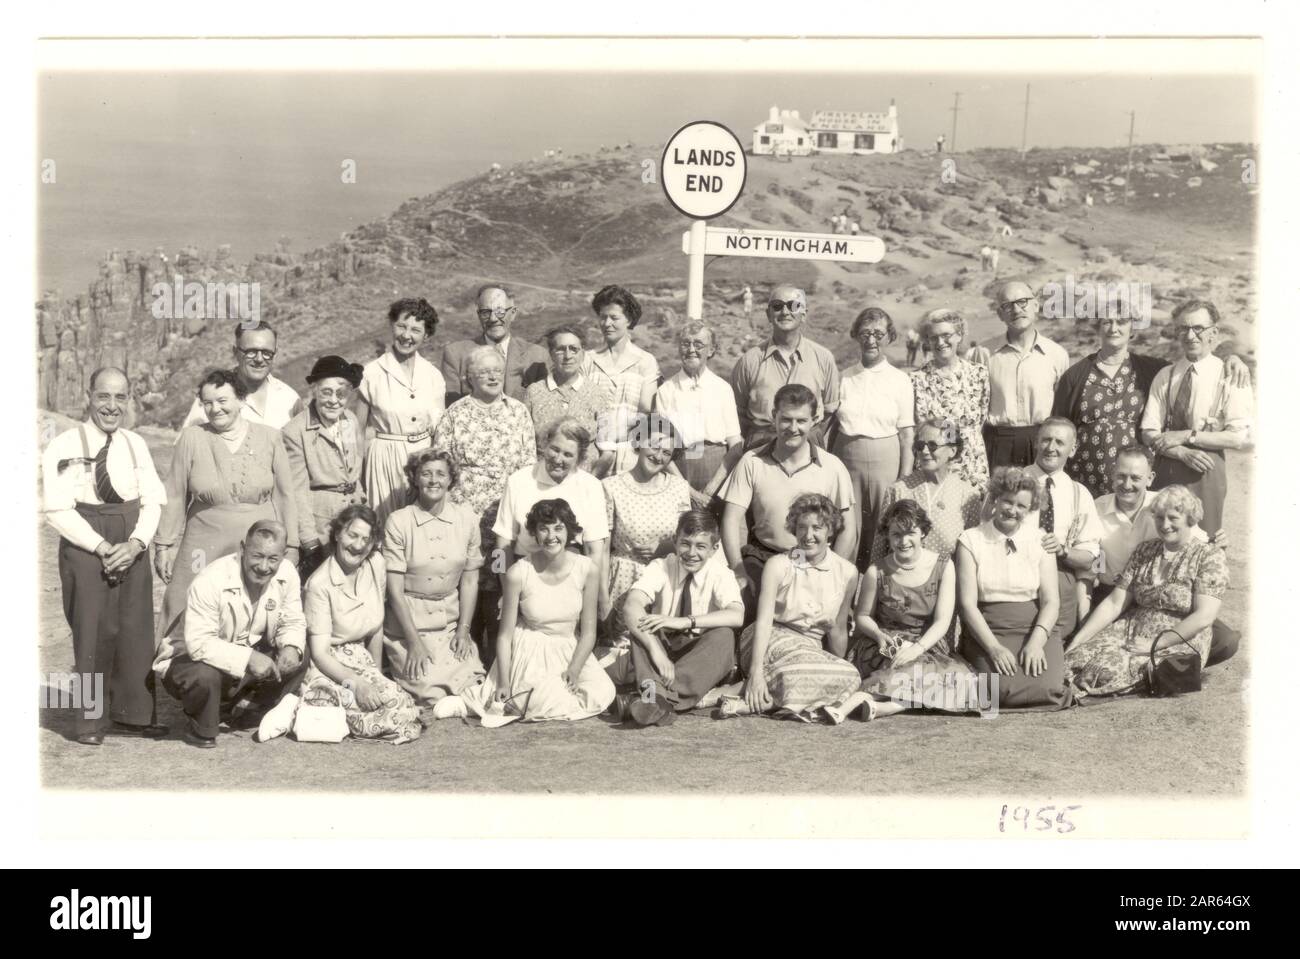 Das kommerzielle Foto der 50er-Jahre-Ausflügler-Gruppe im Urlaub von Nottingham posieren für ein Foto neben dem berühmten Wegweiser am Land's End, Cornwall, Großbritannien vom August 1955 Stockfoto